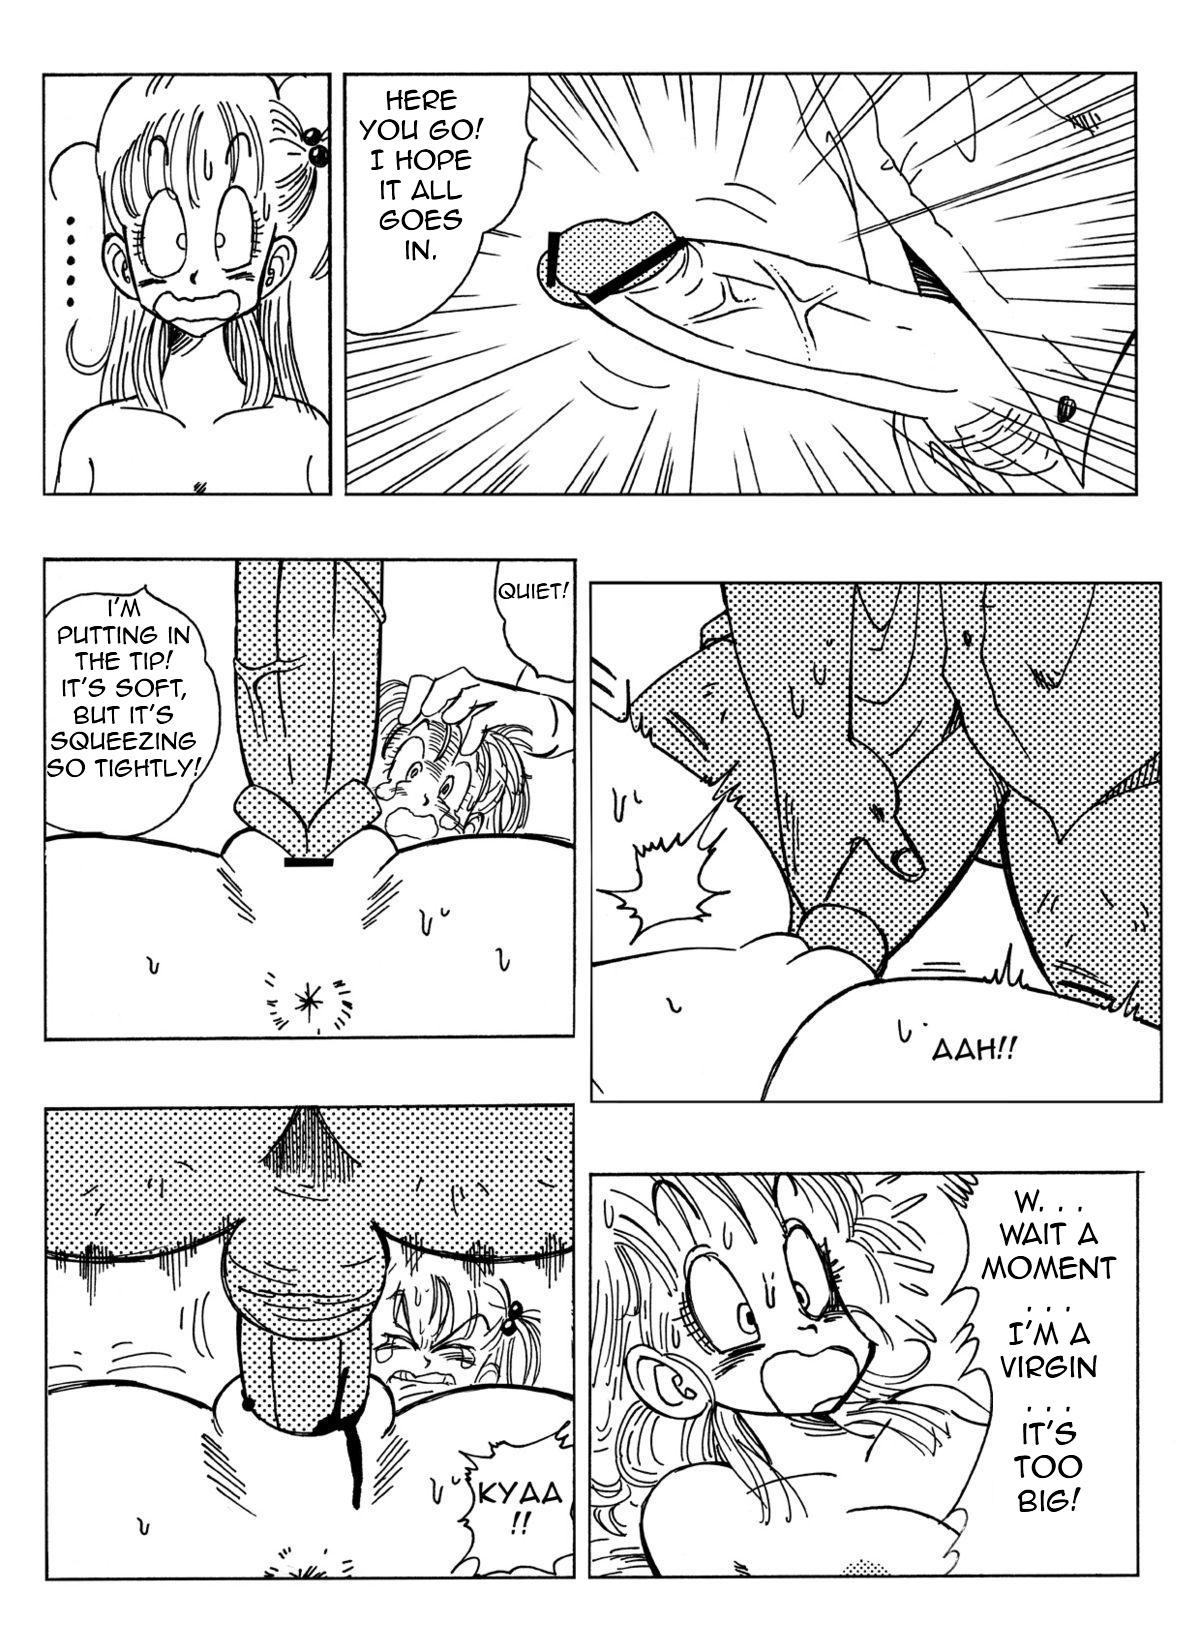 Gaydudes Bulma and Company - Dragon ball Safado - Page 8